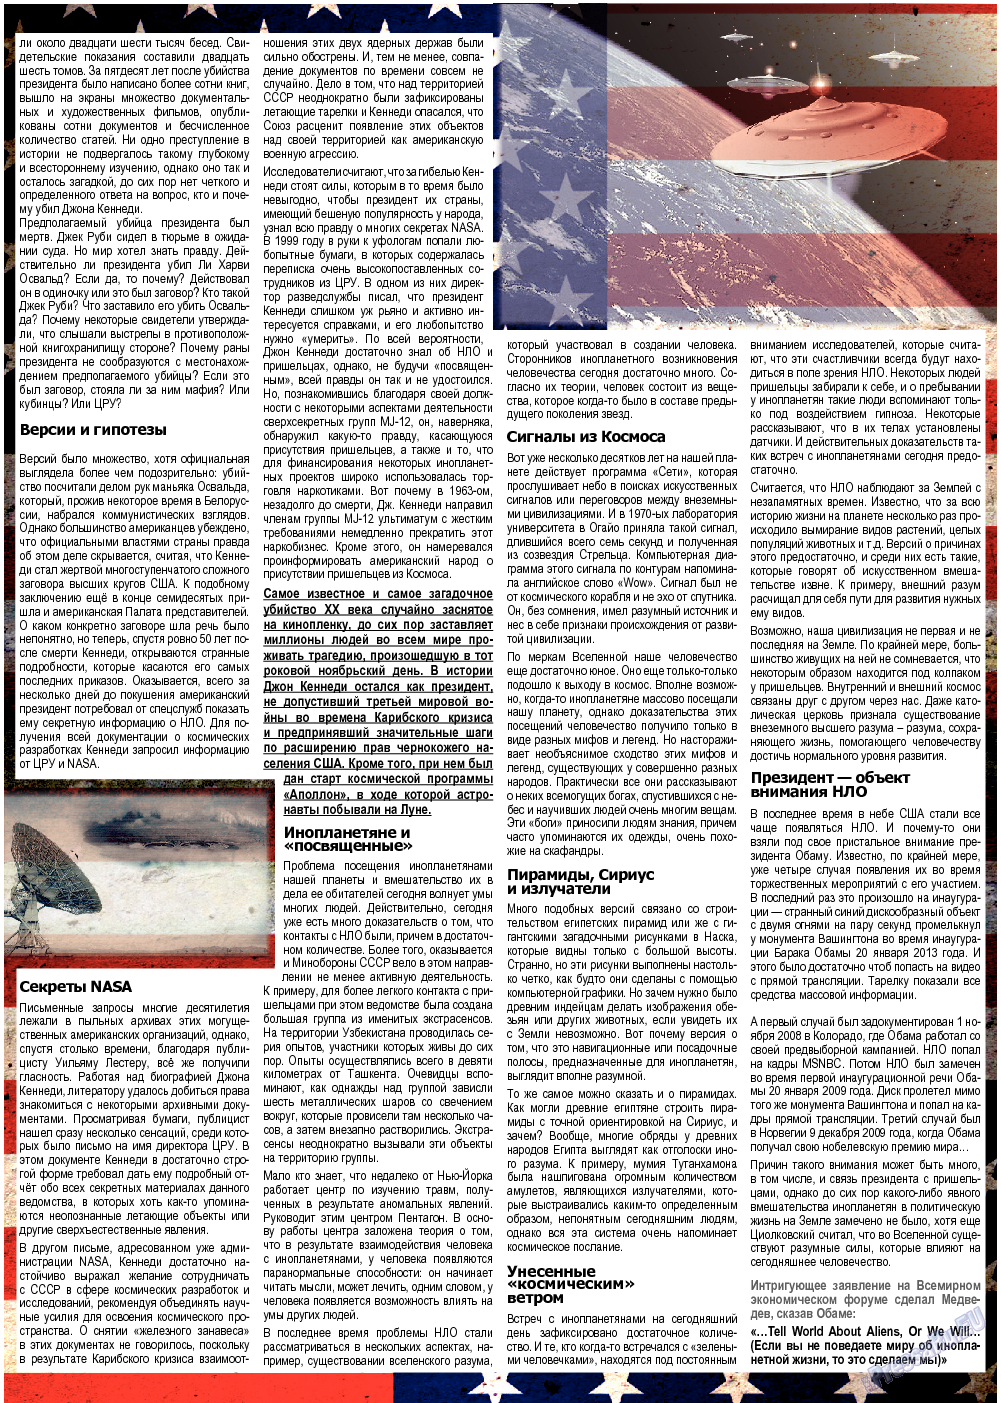 Все pro все (газета). 2013 год, номер 29, стр. 25